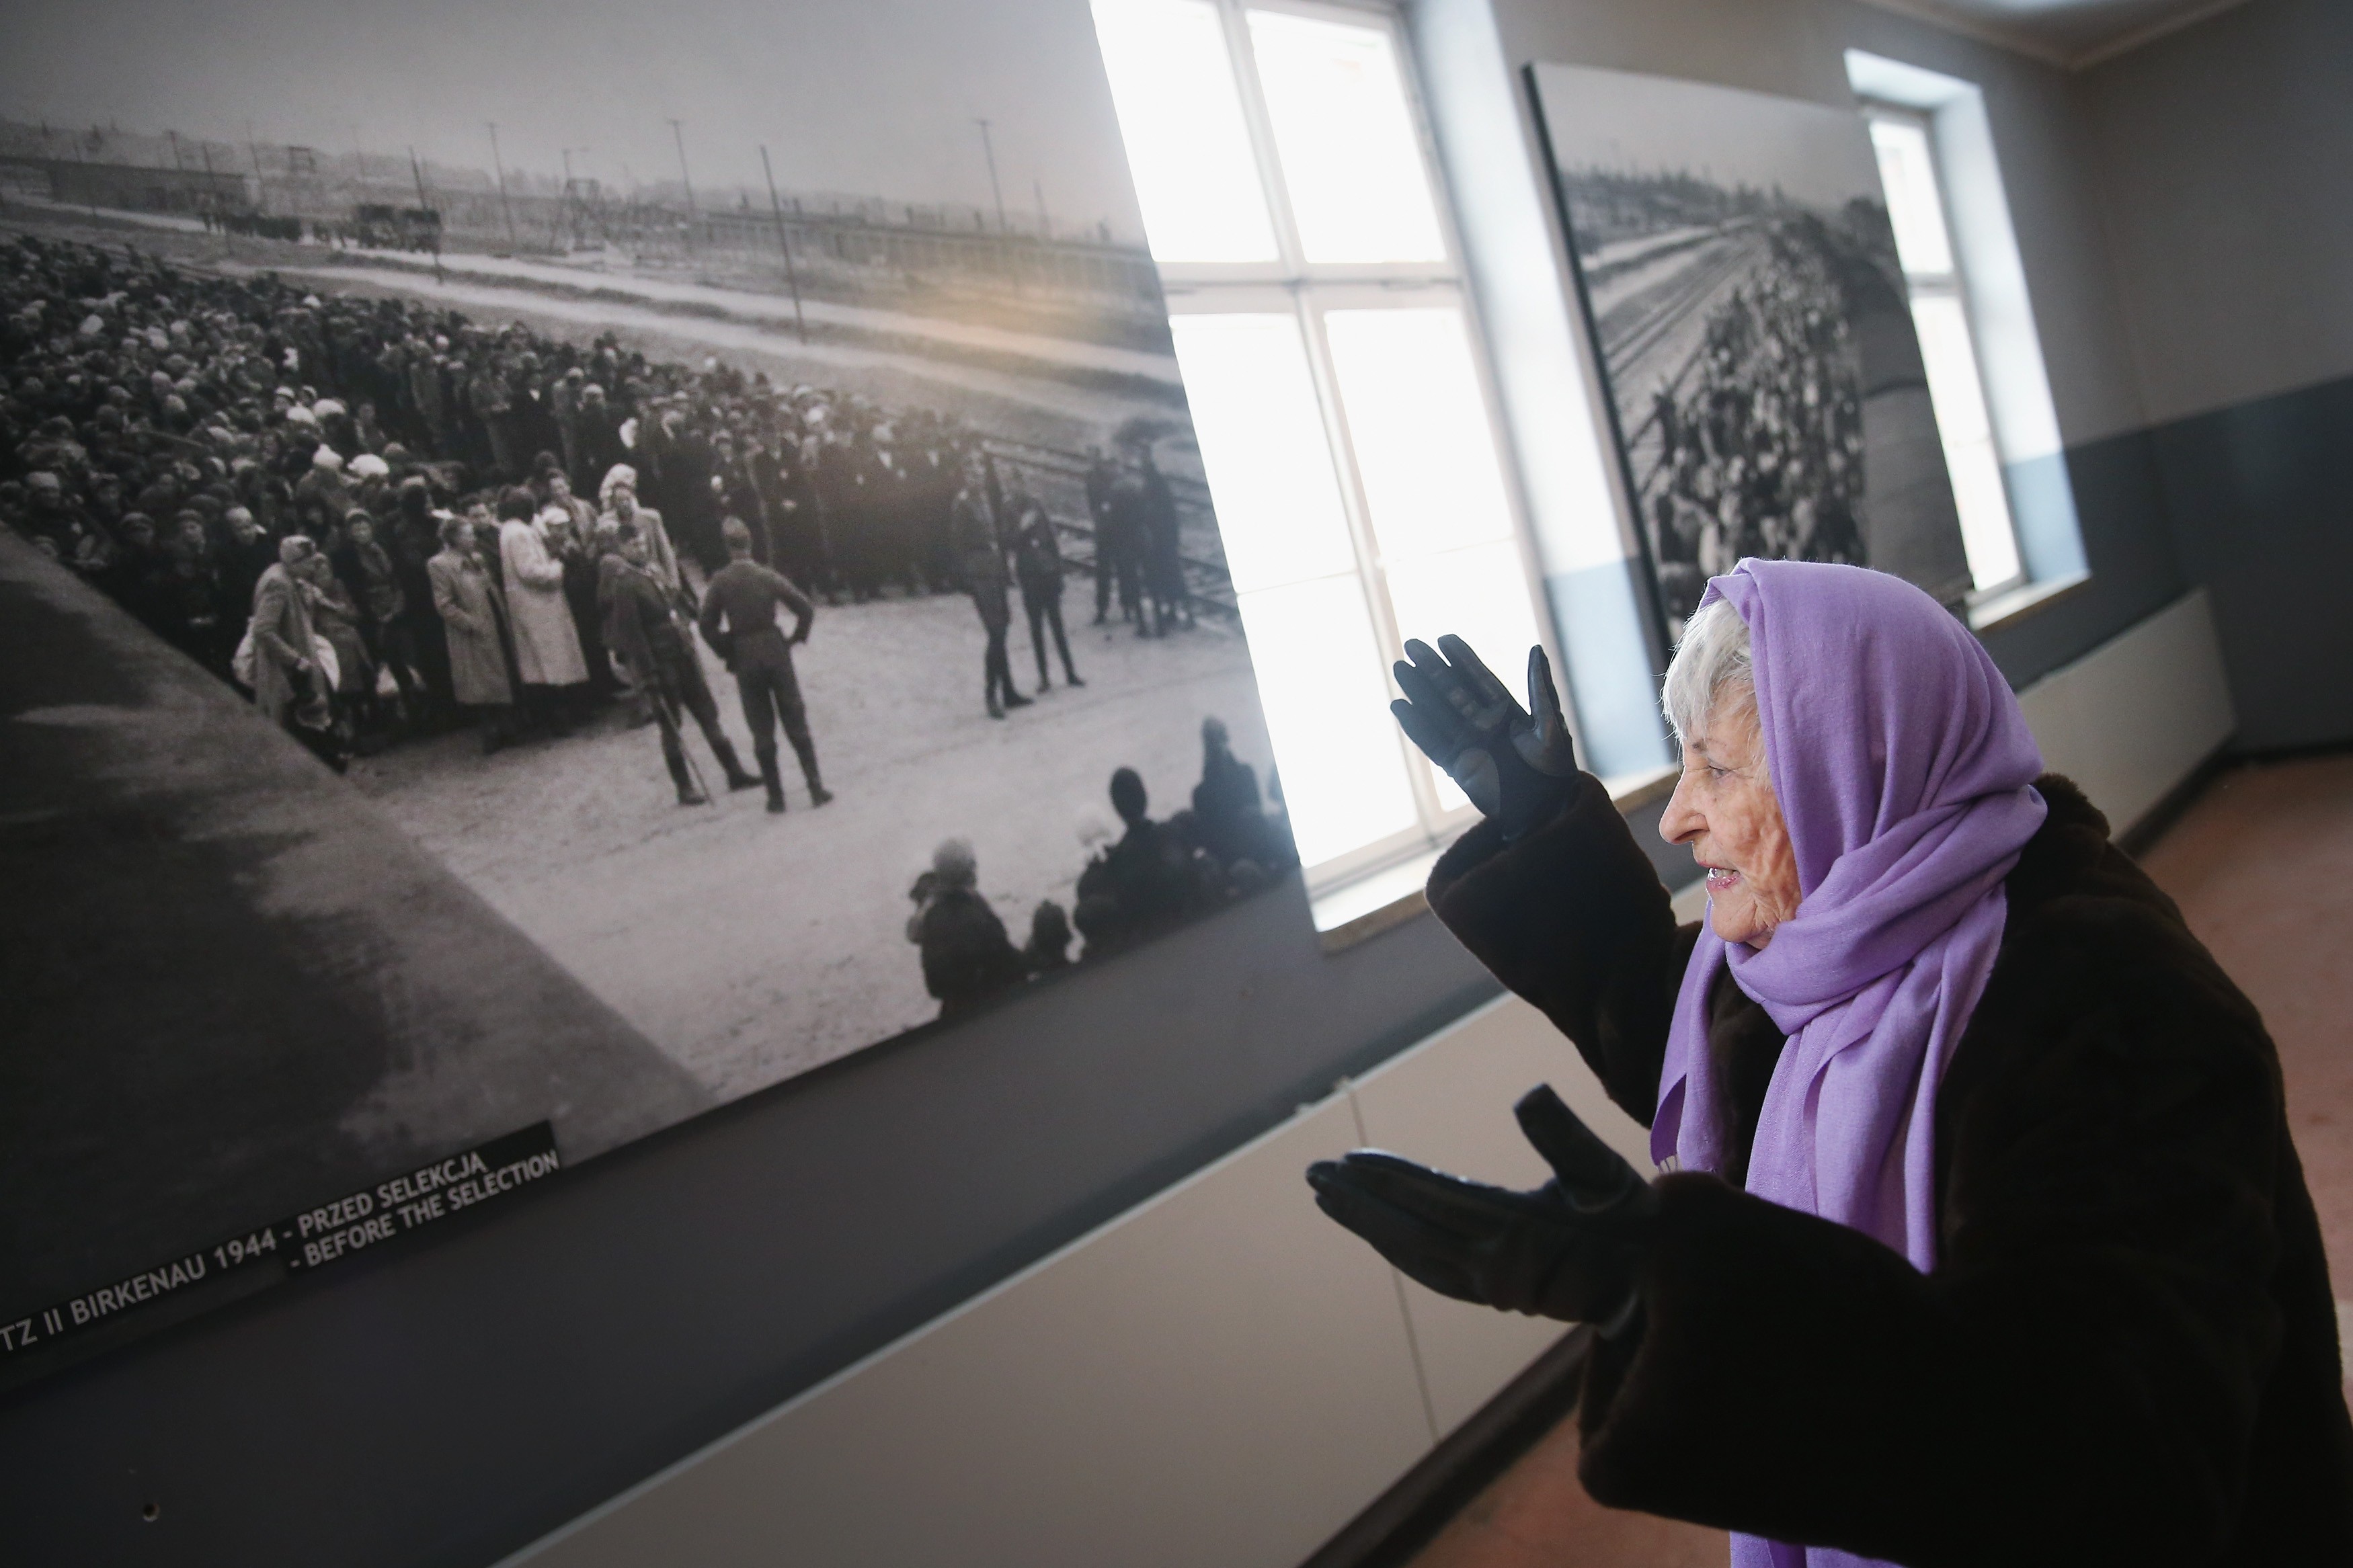  Rose Schindler, 85, reage a uma foto que mostra guardas alemães na exposição que relembra os 70 anos da libertação de Auschwitz. Ela chegou ao campo de concentração com 14 anos, em 1944. De acordo com ela, a única razão por não ter sido exterminada foi que ela mentiu sua idade - disse ter 18 anos (Foto: getty)